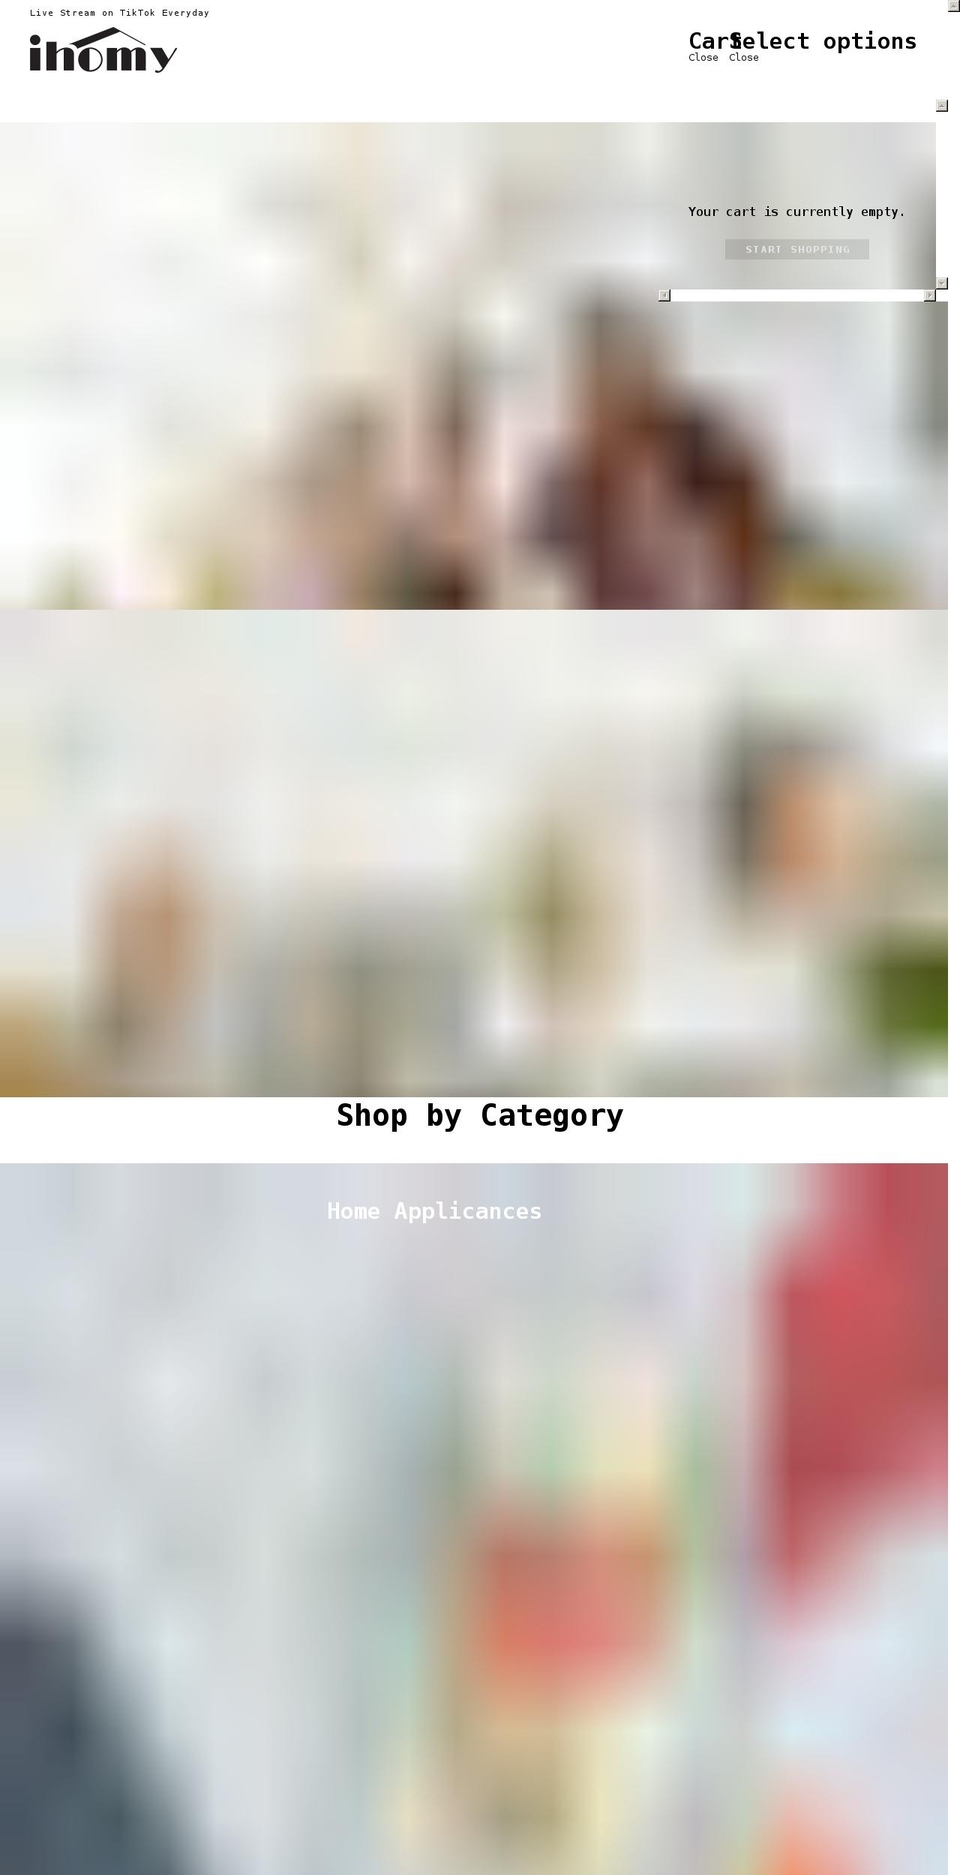 ihomy.com shopify website screenshot